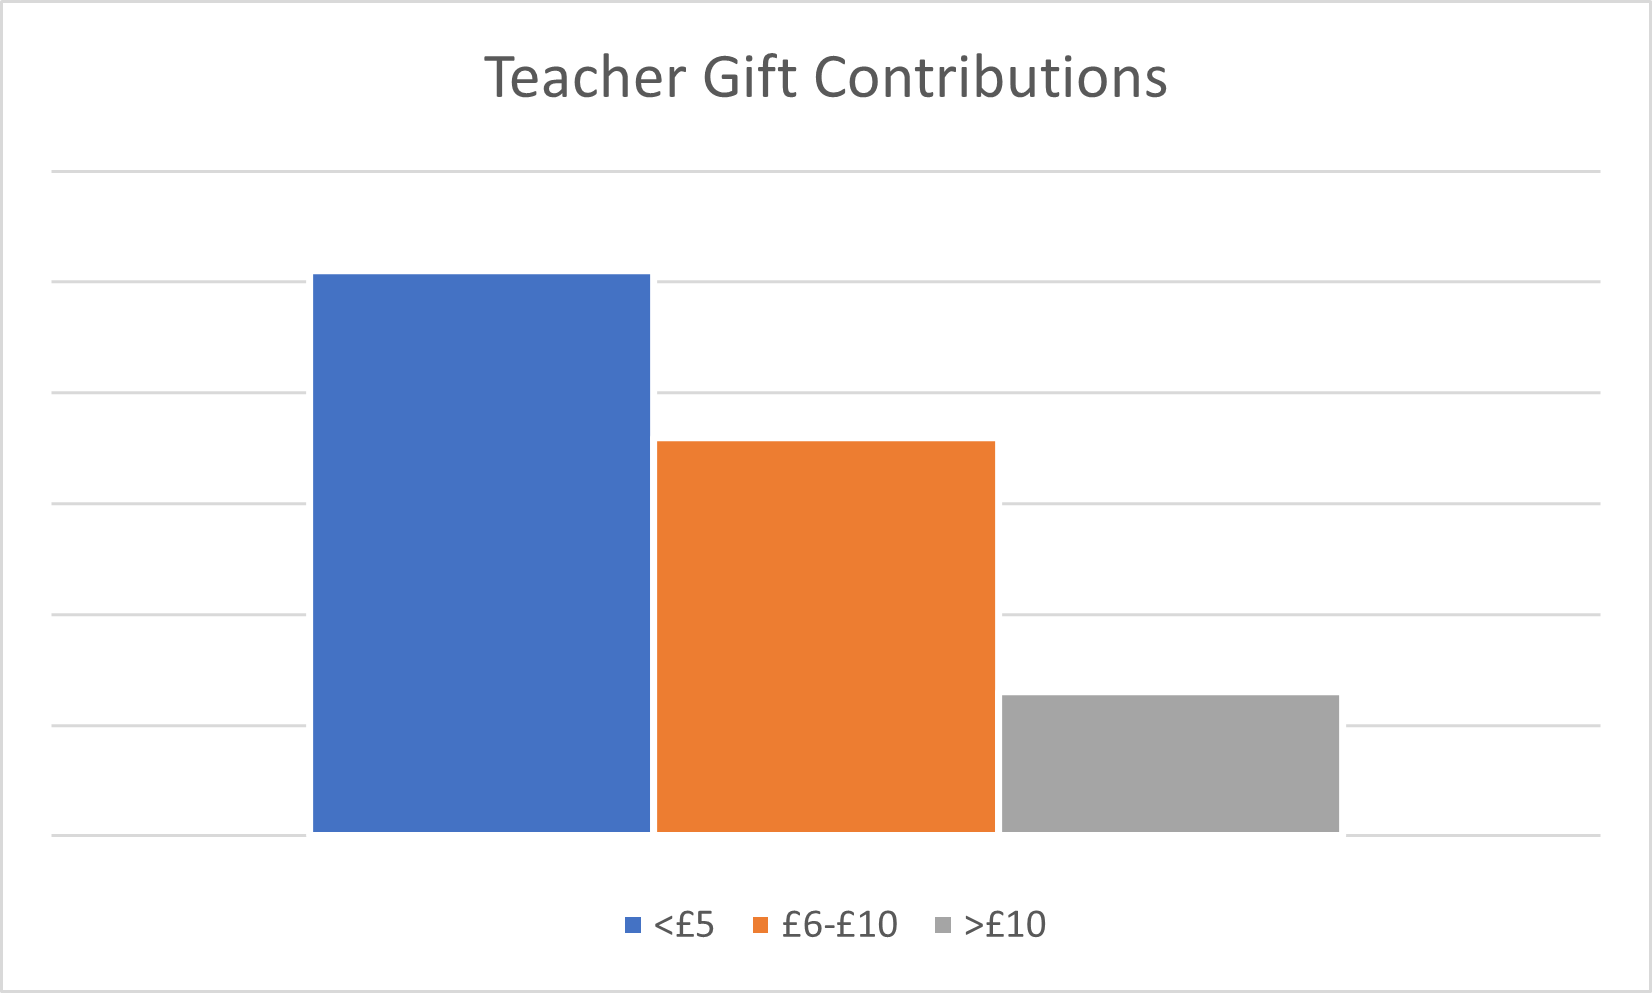 Teacher gift contribution bar chart